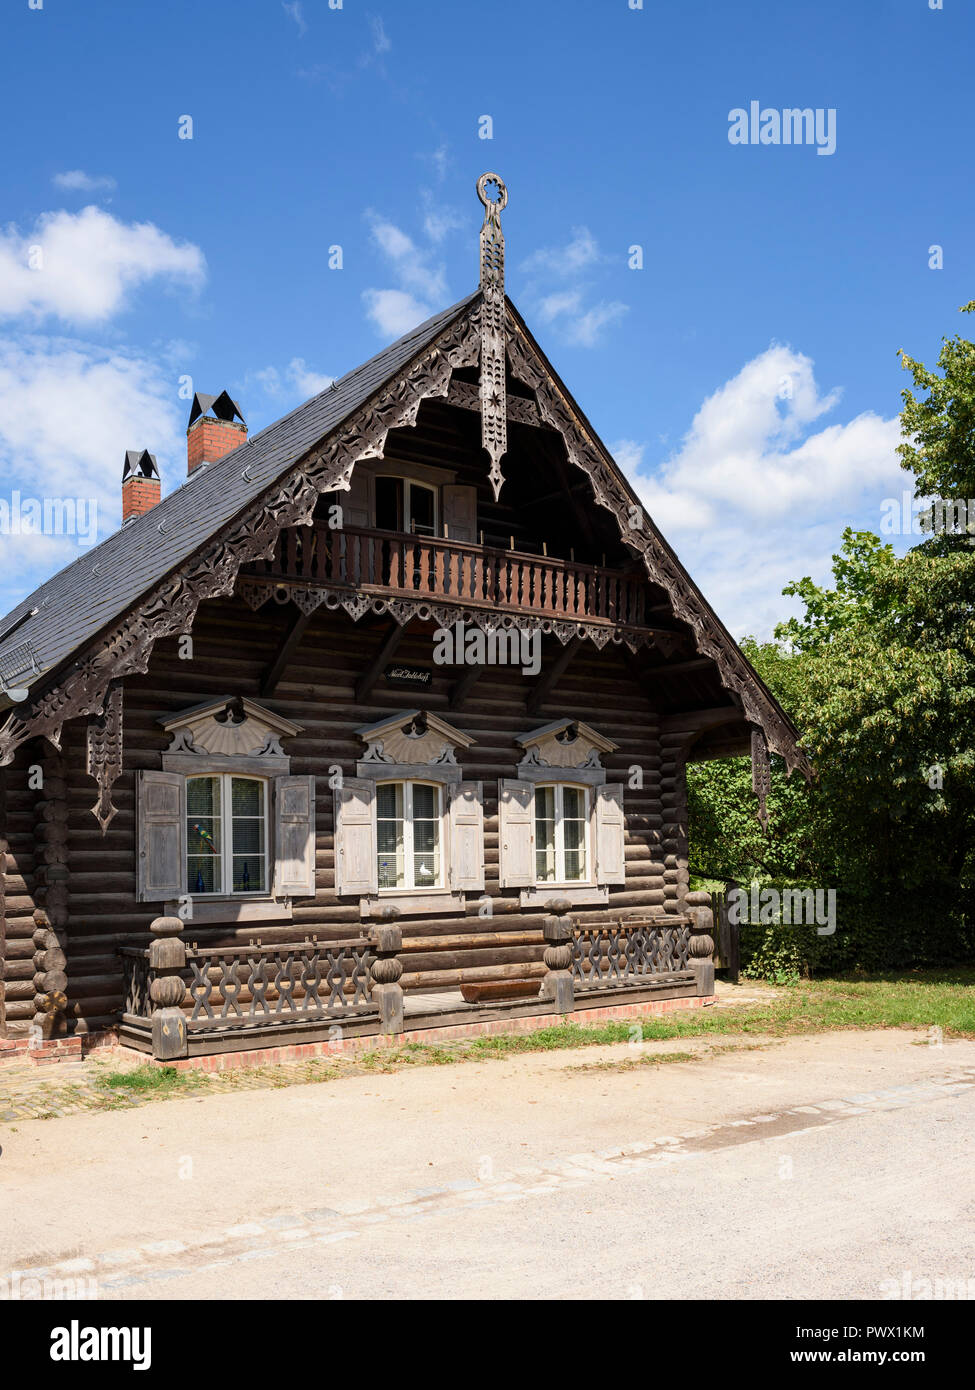 Potsdam. Berlin. L'Allemagne. Maison de bois traditionnelle russe dans le règlement d'Alexandrowka, une colonie russe du 19e siècle à Potsdam. Banque D'Images